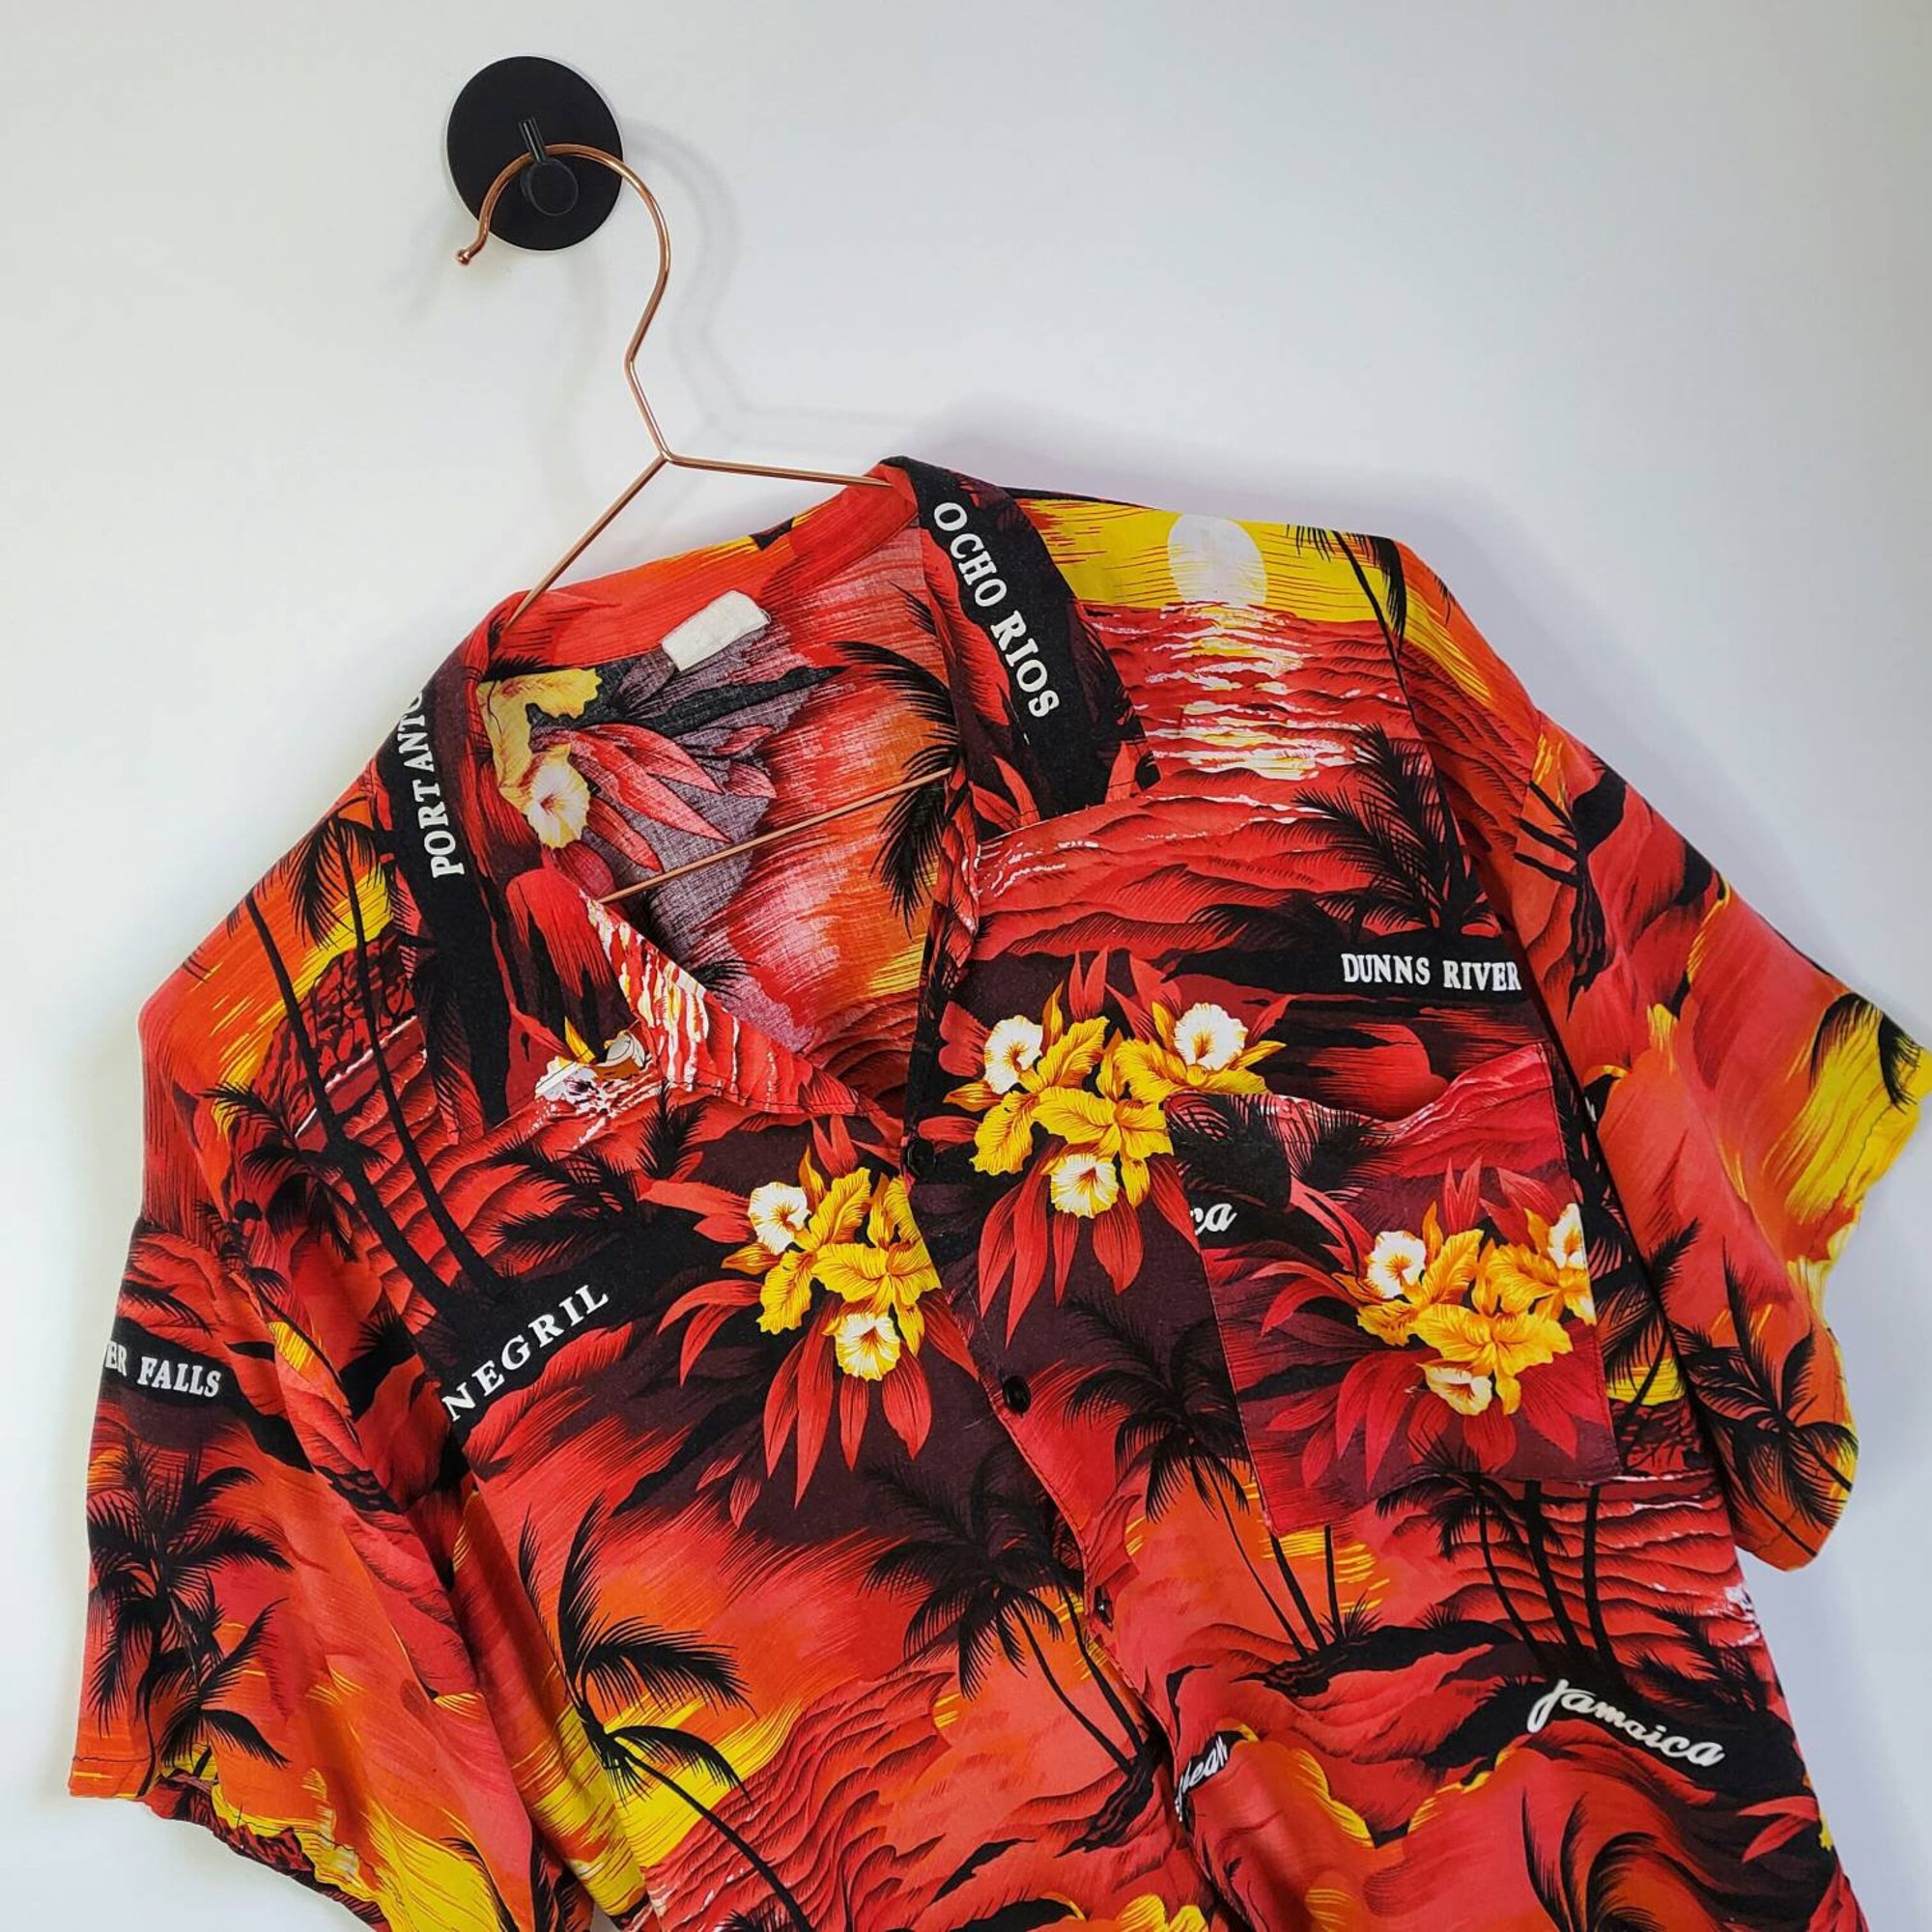 90s Trippy Hawaiian Shirt